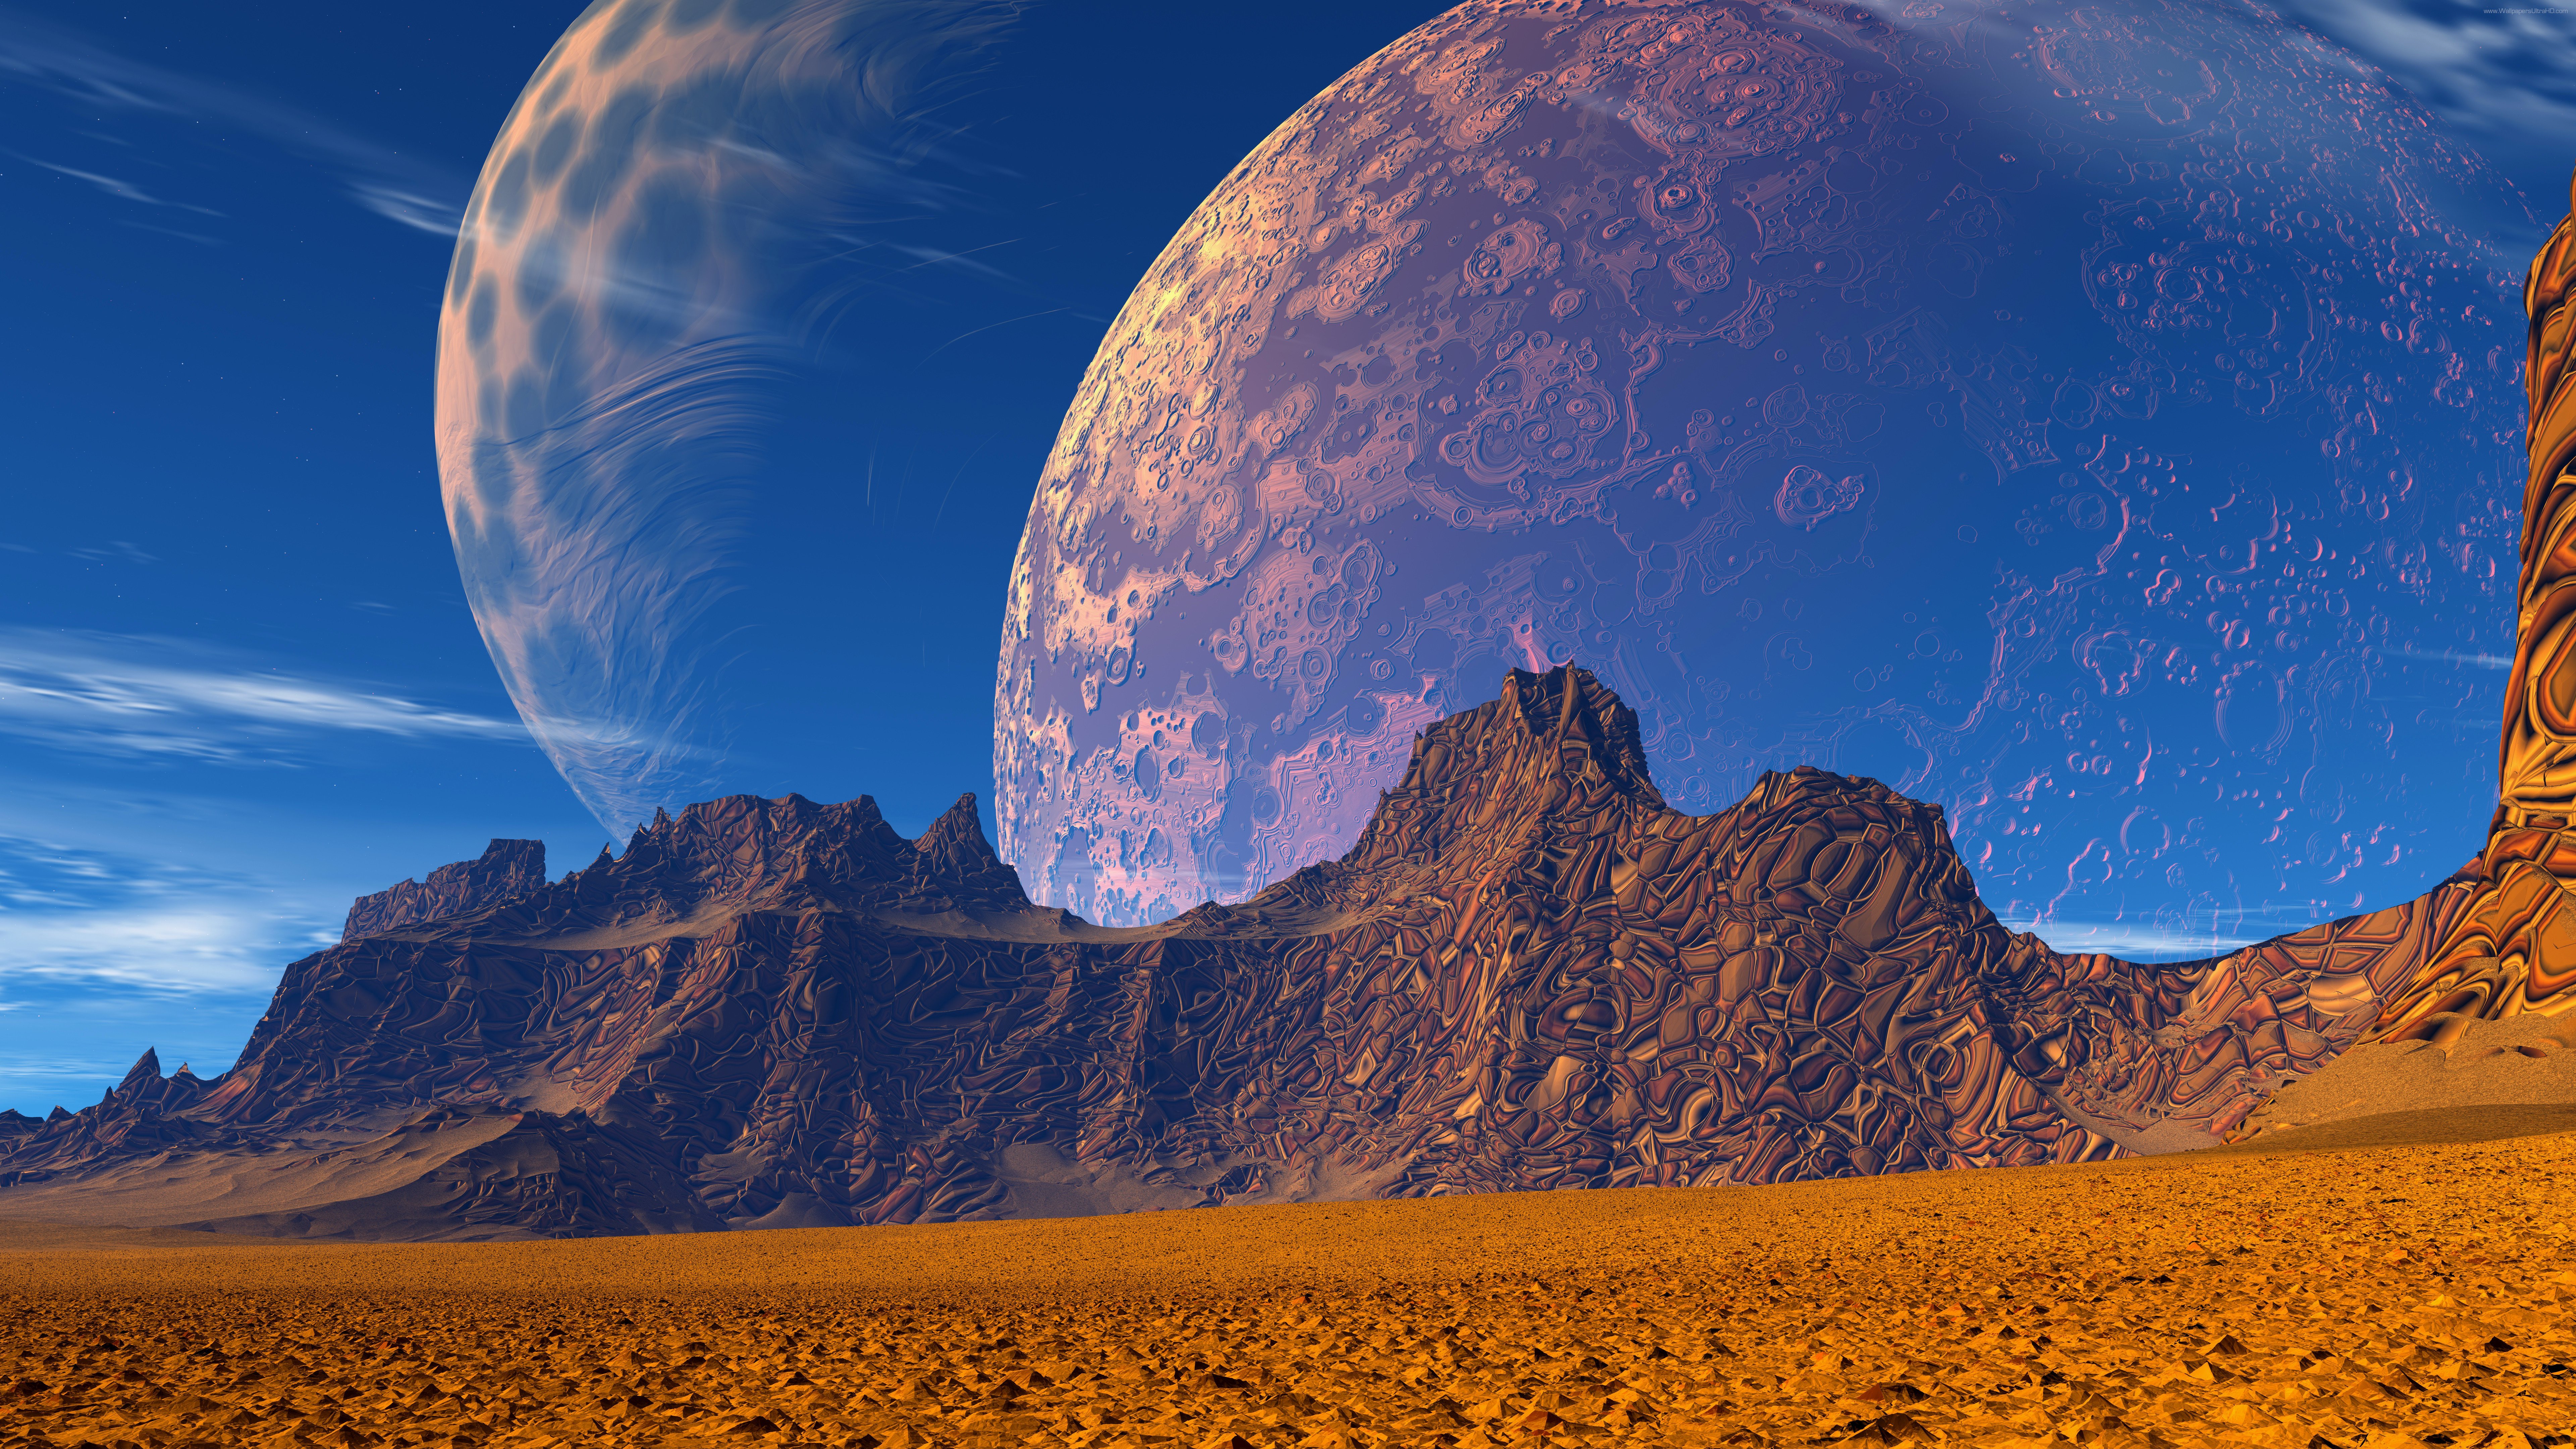 Fondos de pantalla Desert mountains planets